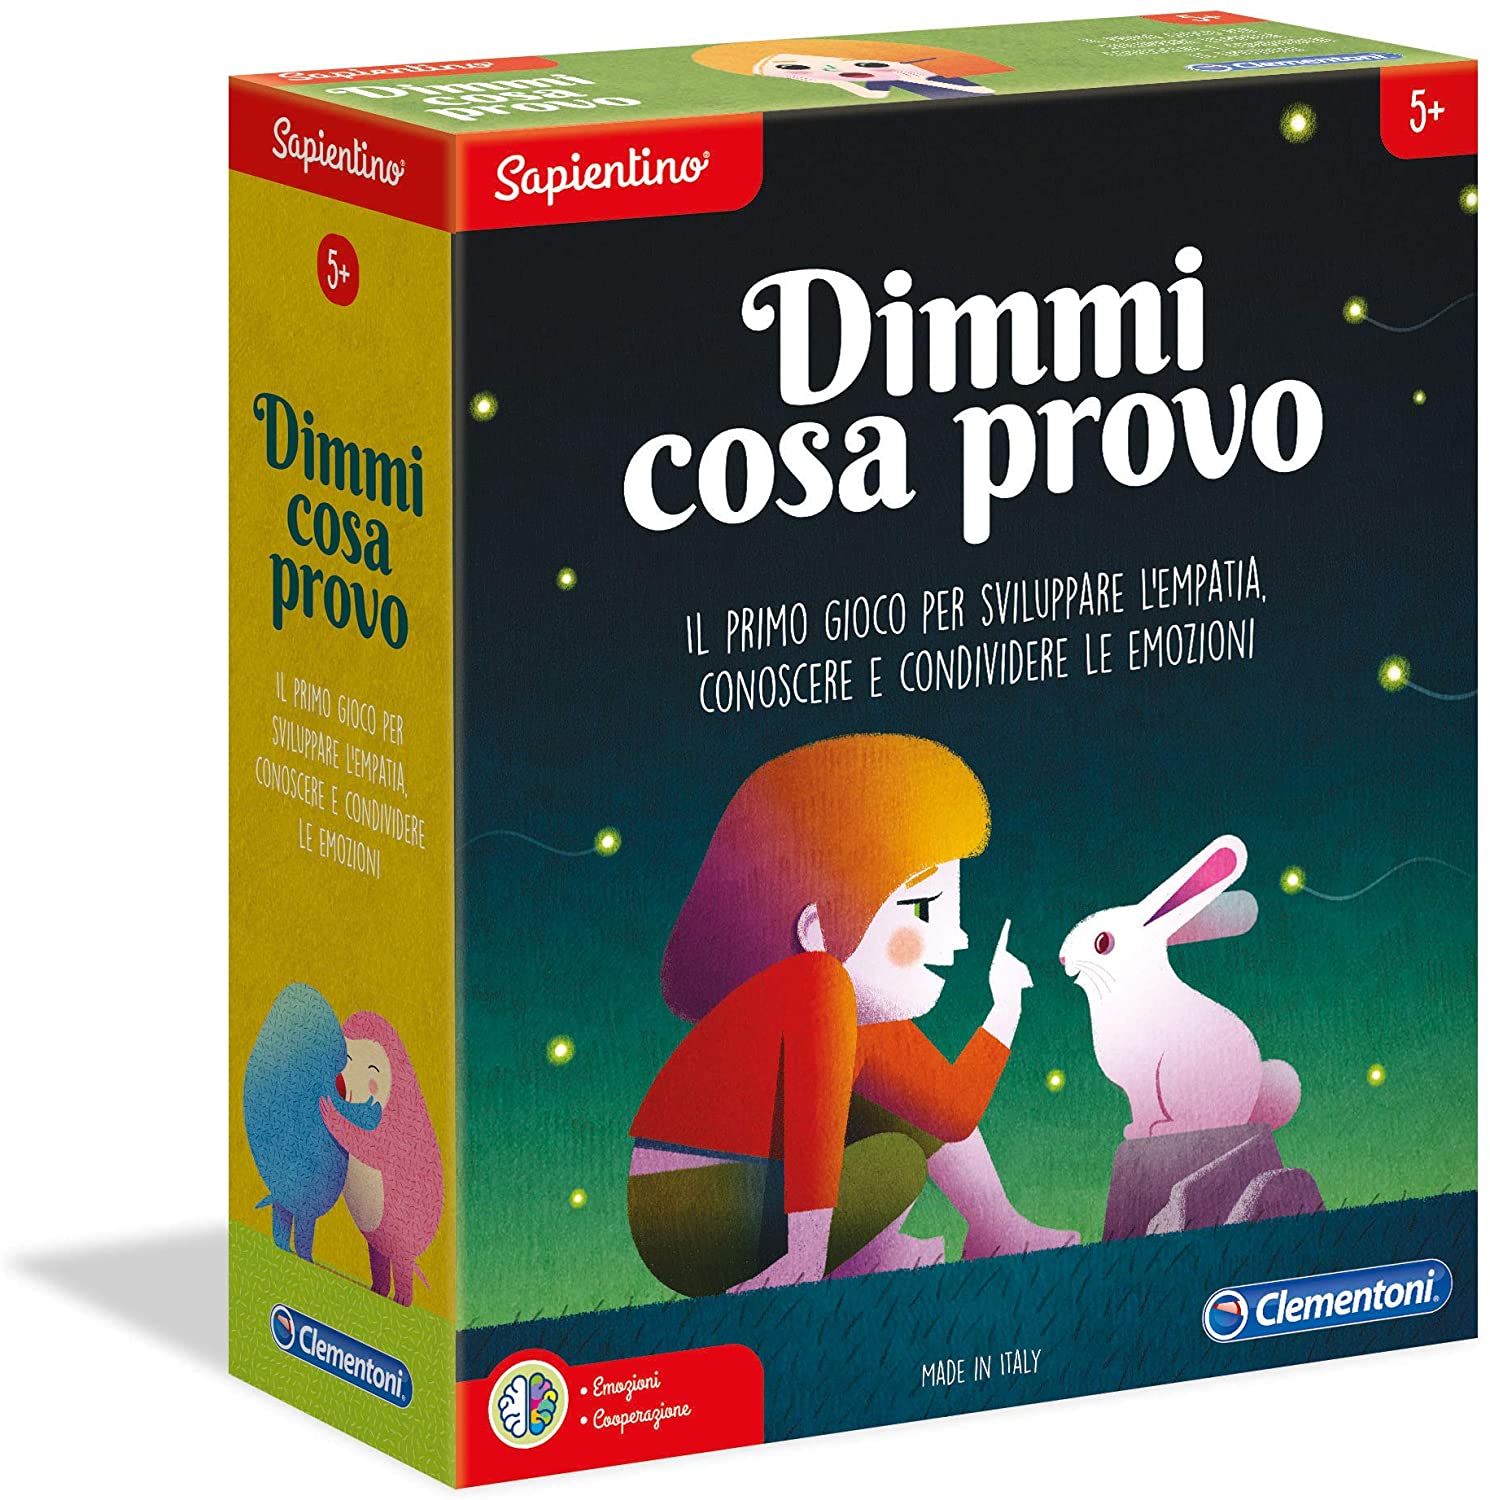 Clementoni-16208-Sapientino-Dimmi Cosa Provo Educational Game Multi-Coloure